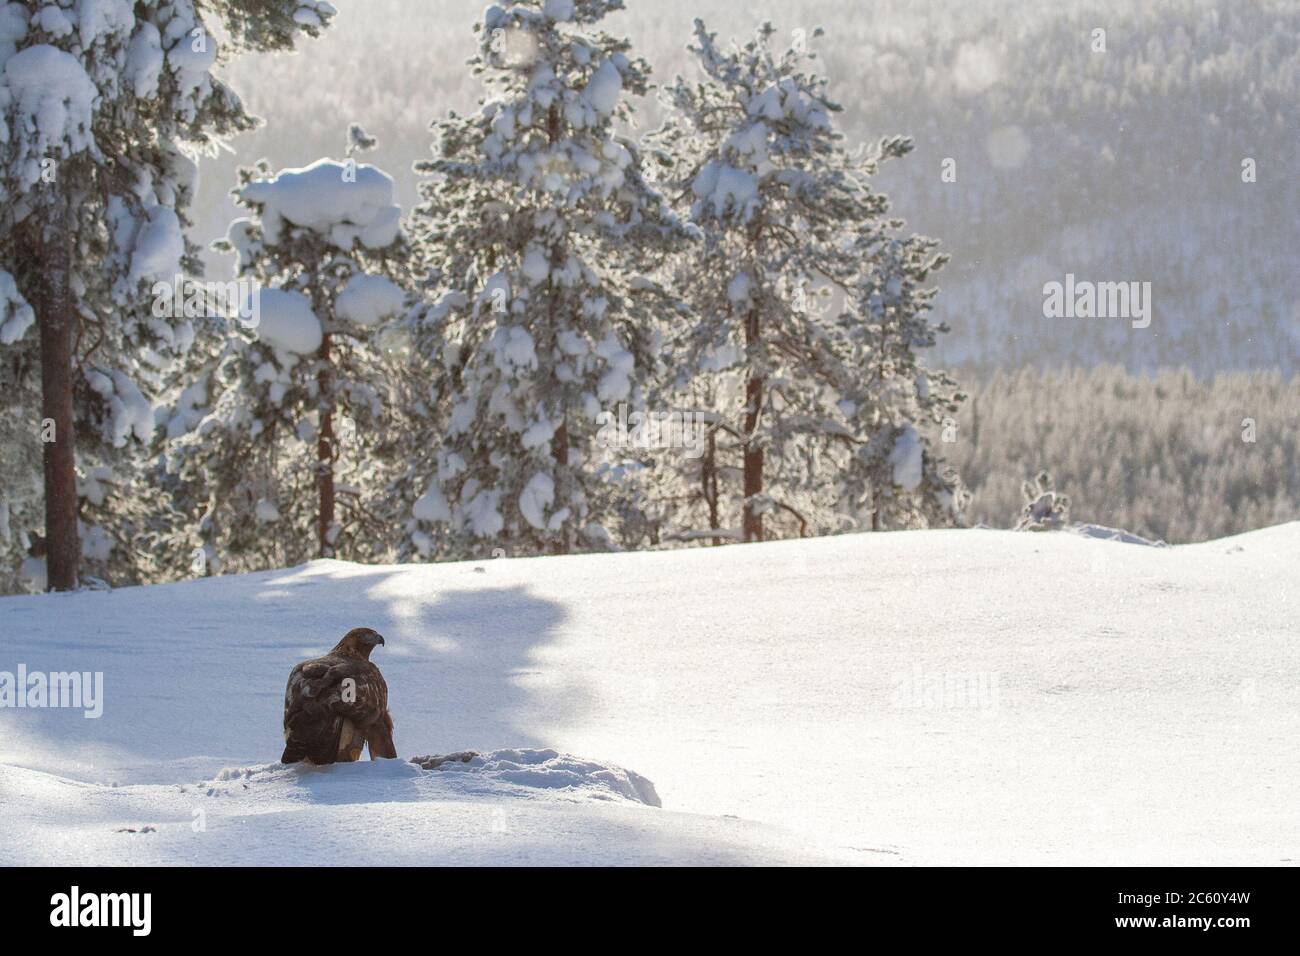 Aigle d'or (Aquila chrysaetos) dans une forêt de taïga autour de Kuusamo en Finlande pendant un hiver froid. Assis dans la neige avec rétroéclairage. Banque D'Images